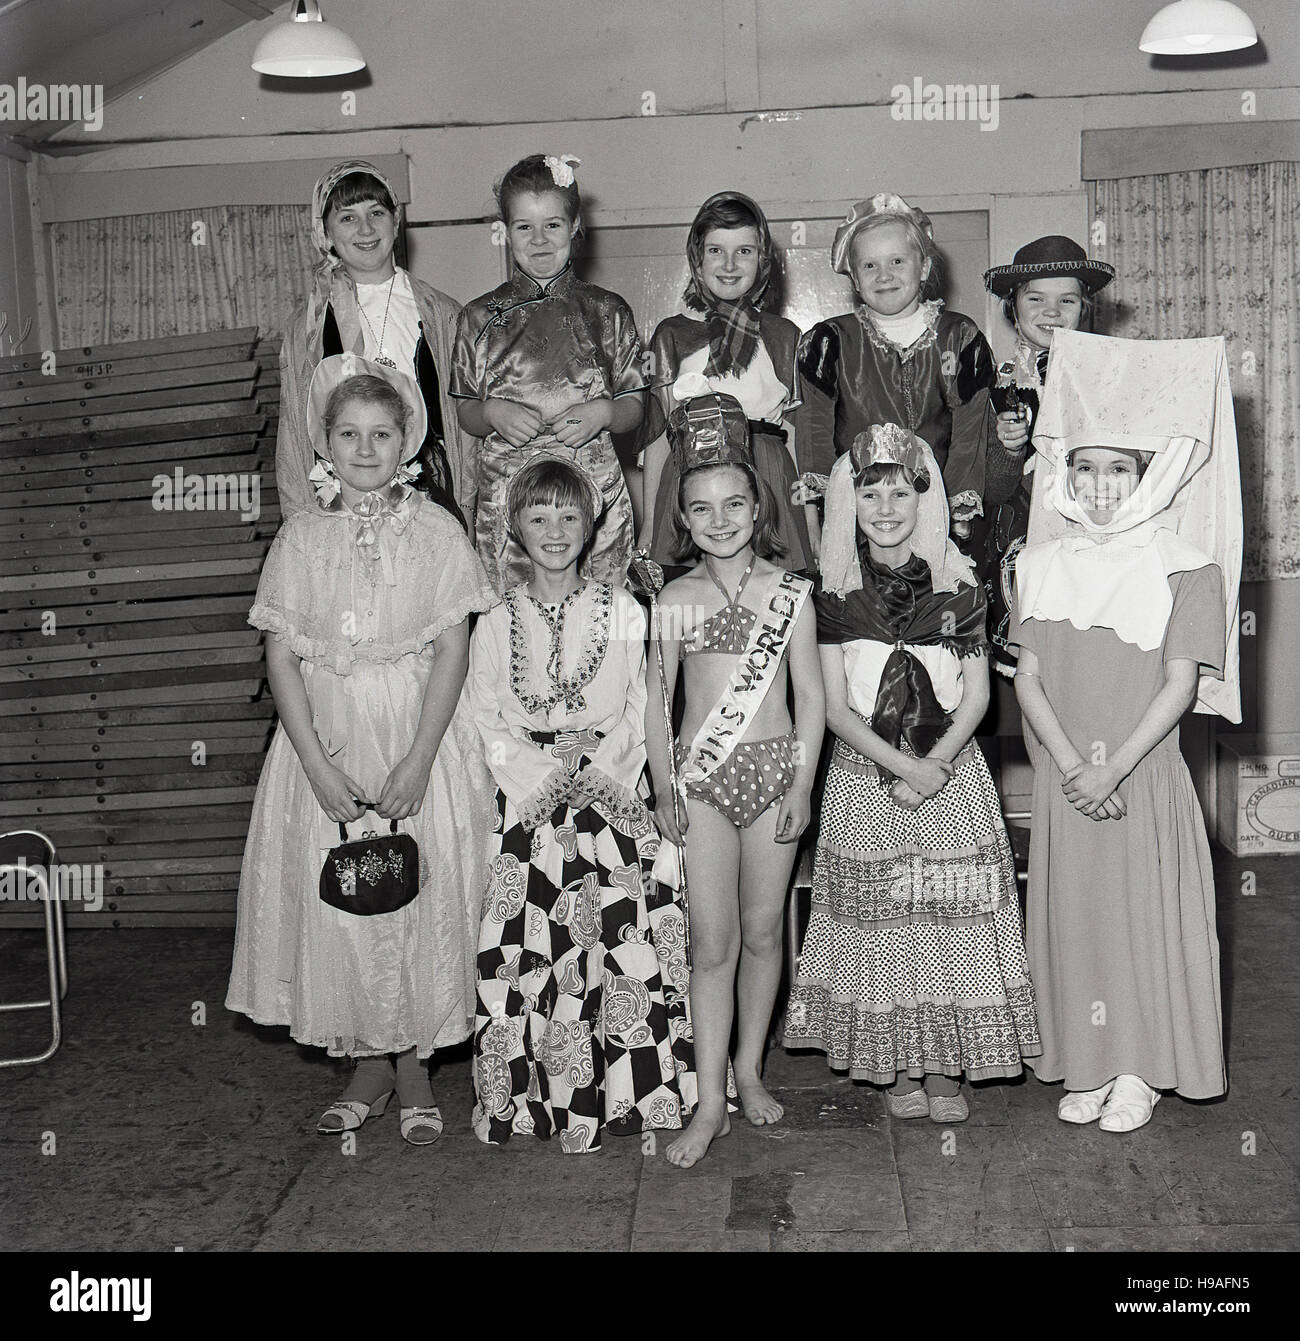 1965, storico, sorridenti ragazze che posano per una foto di gruppo nei loro abiti fantasiosi costumi Foto Stock